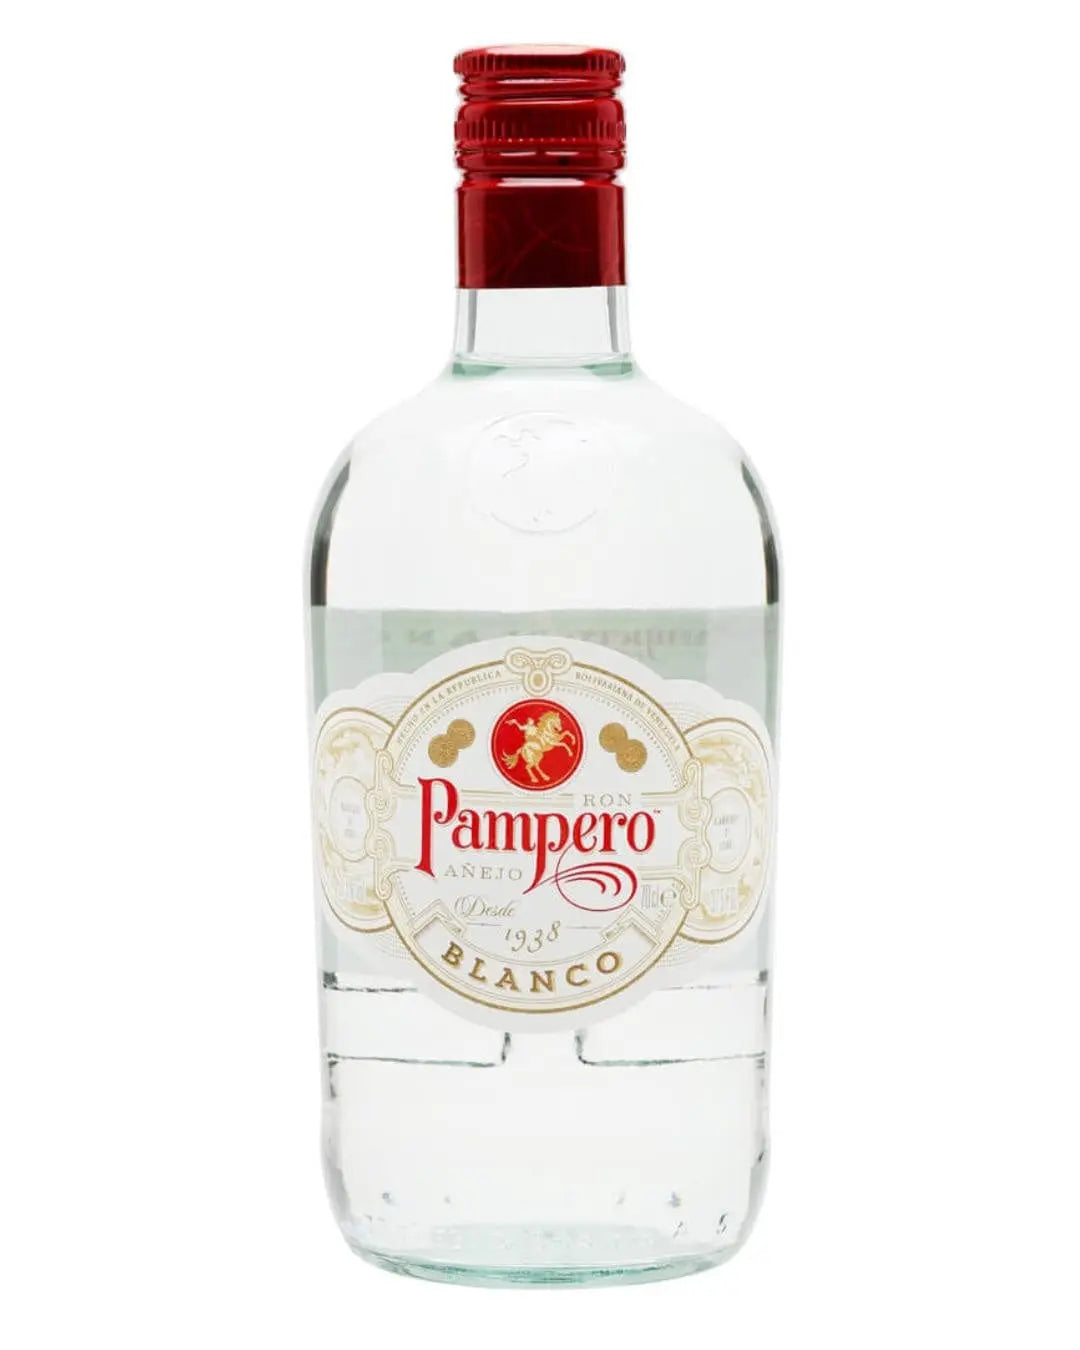 Pampero Blanco Rum, 70 cl Rum